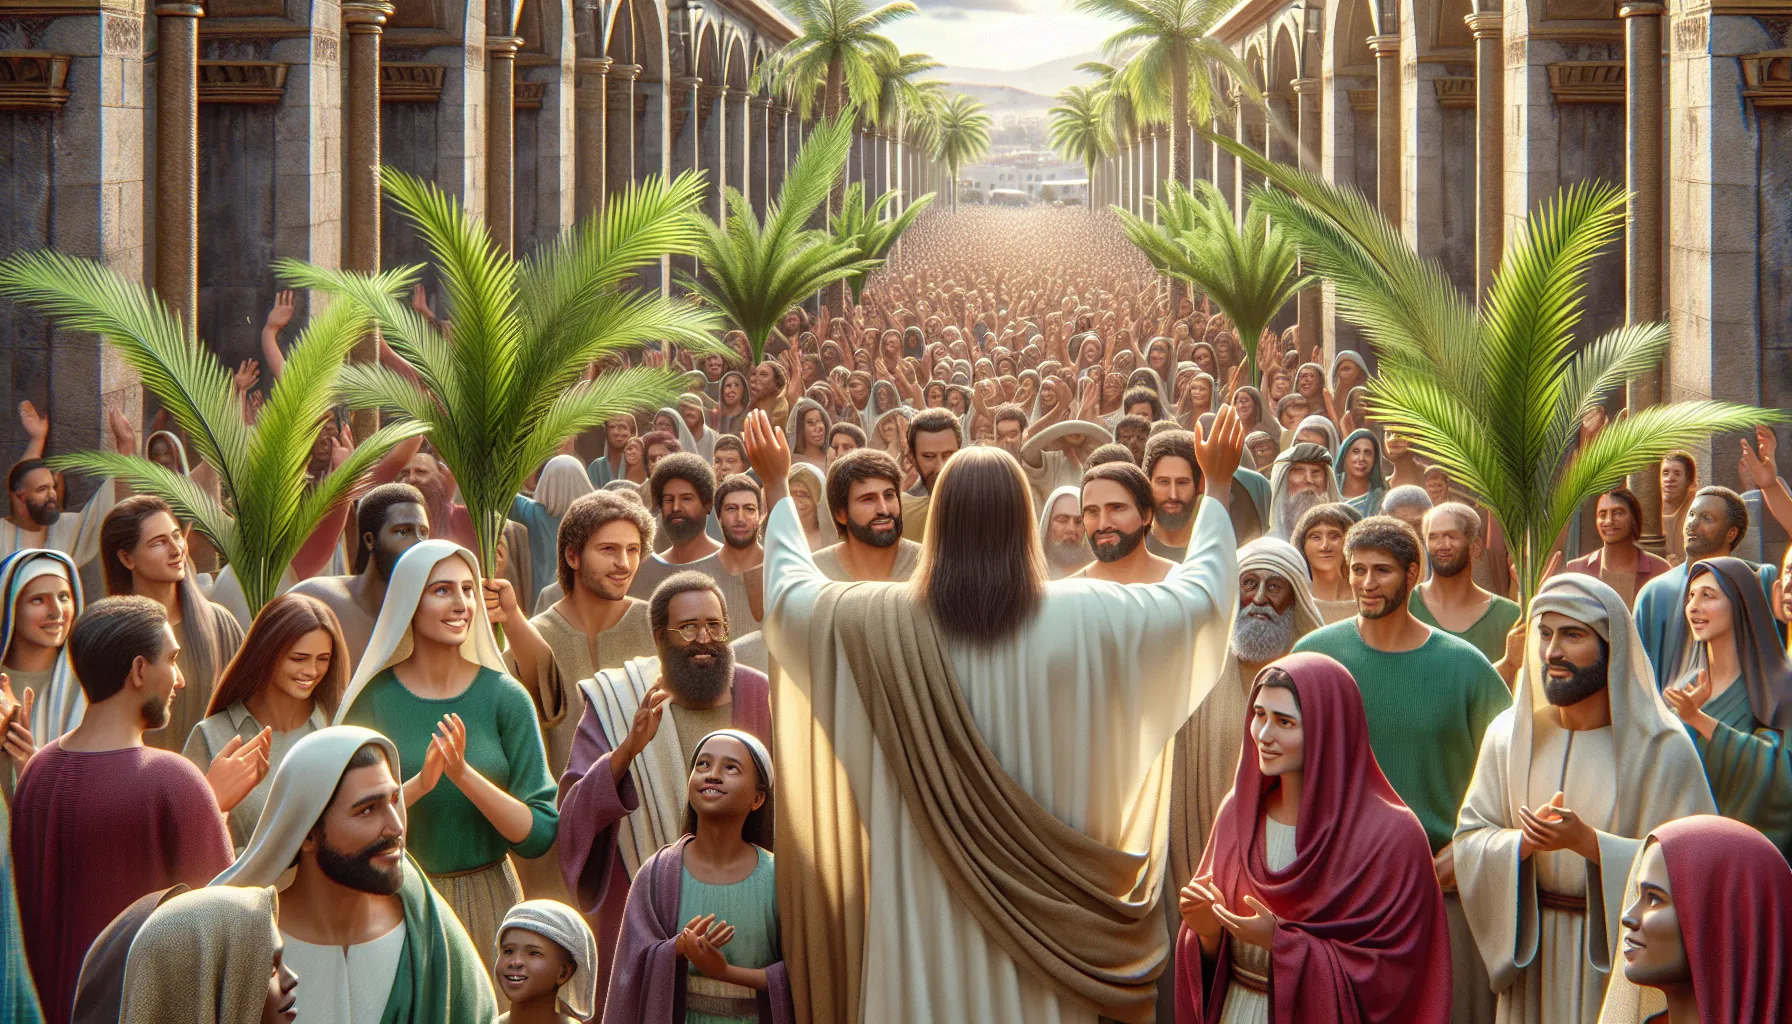 Imagen del Domingo de Ramos con multitud de personas agitando palmas en celebración